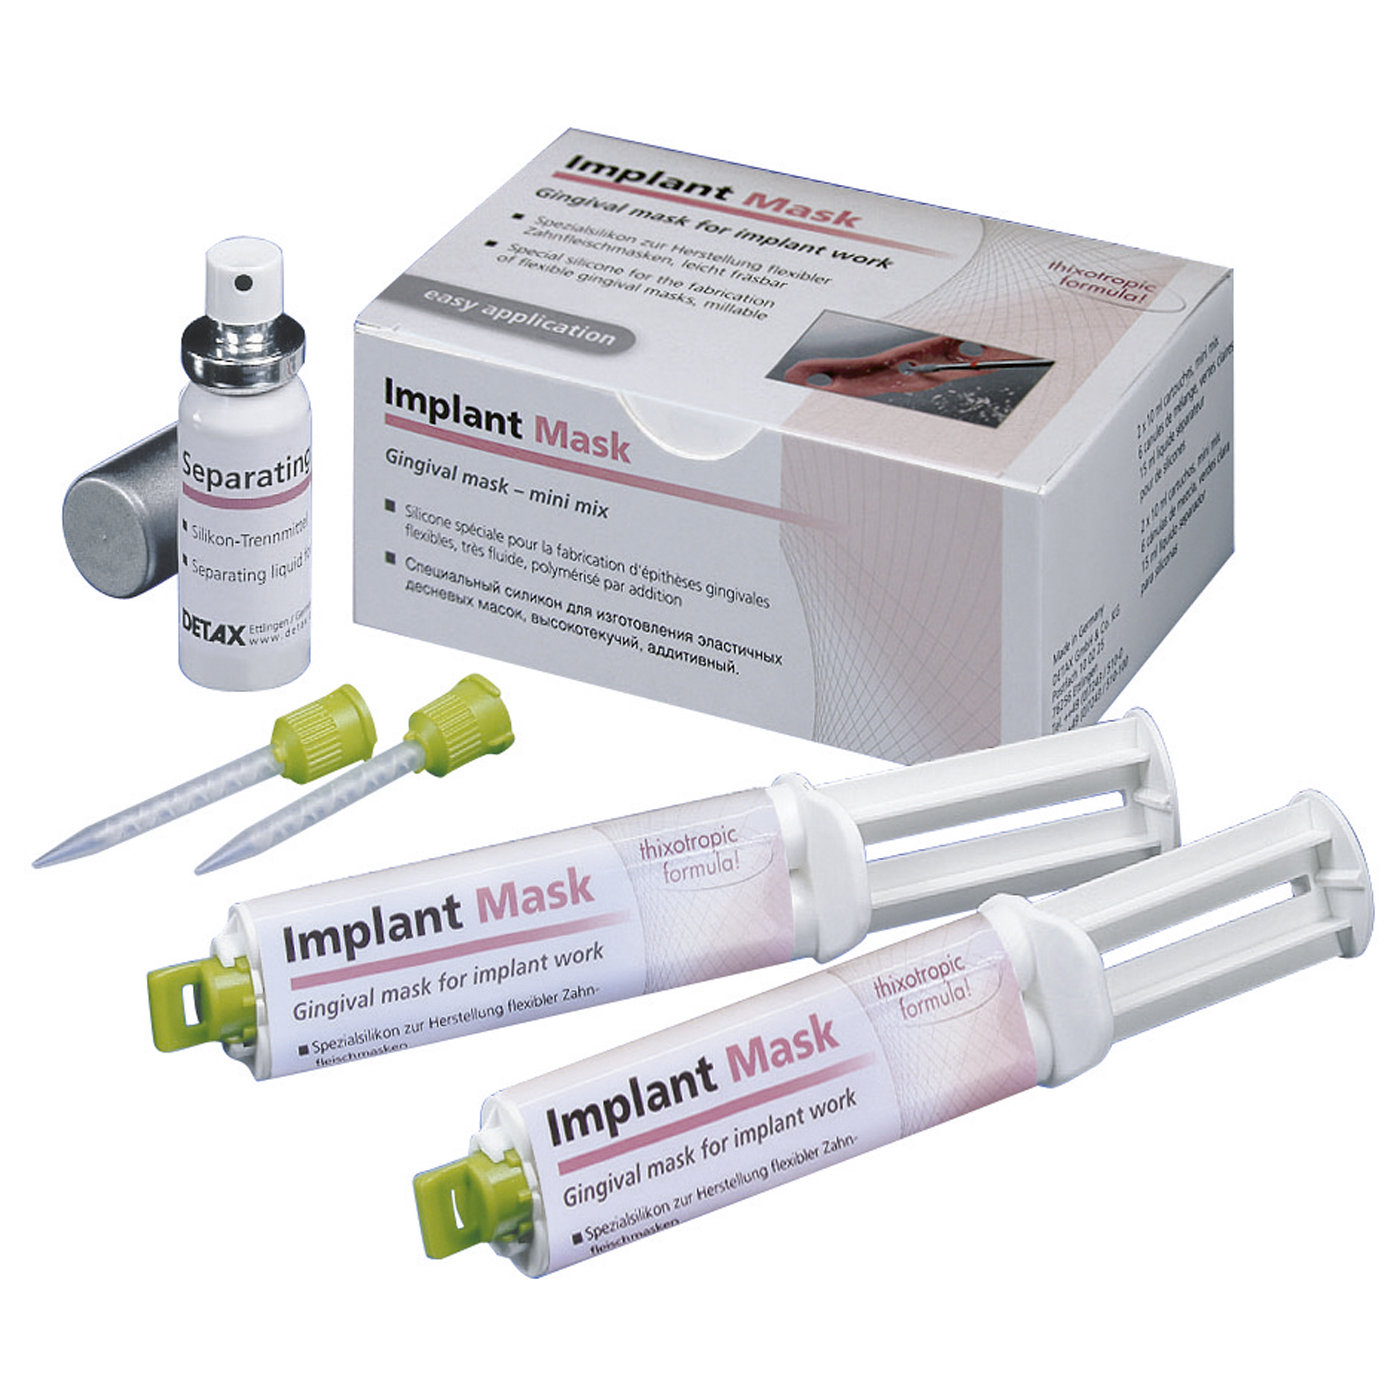 Detax Implant Mask Zahnfleischmaskenmaterial - 1 Set